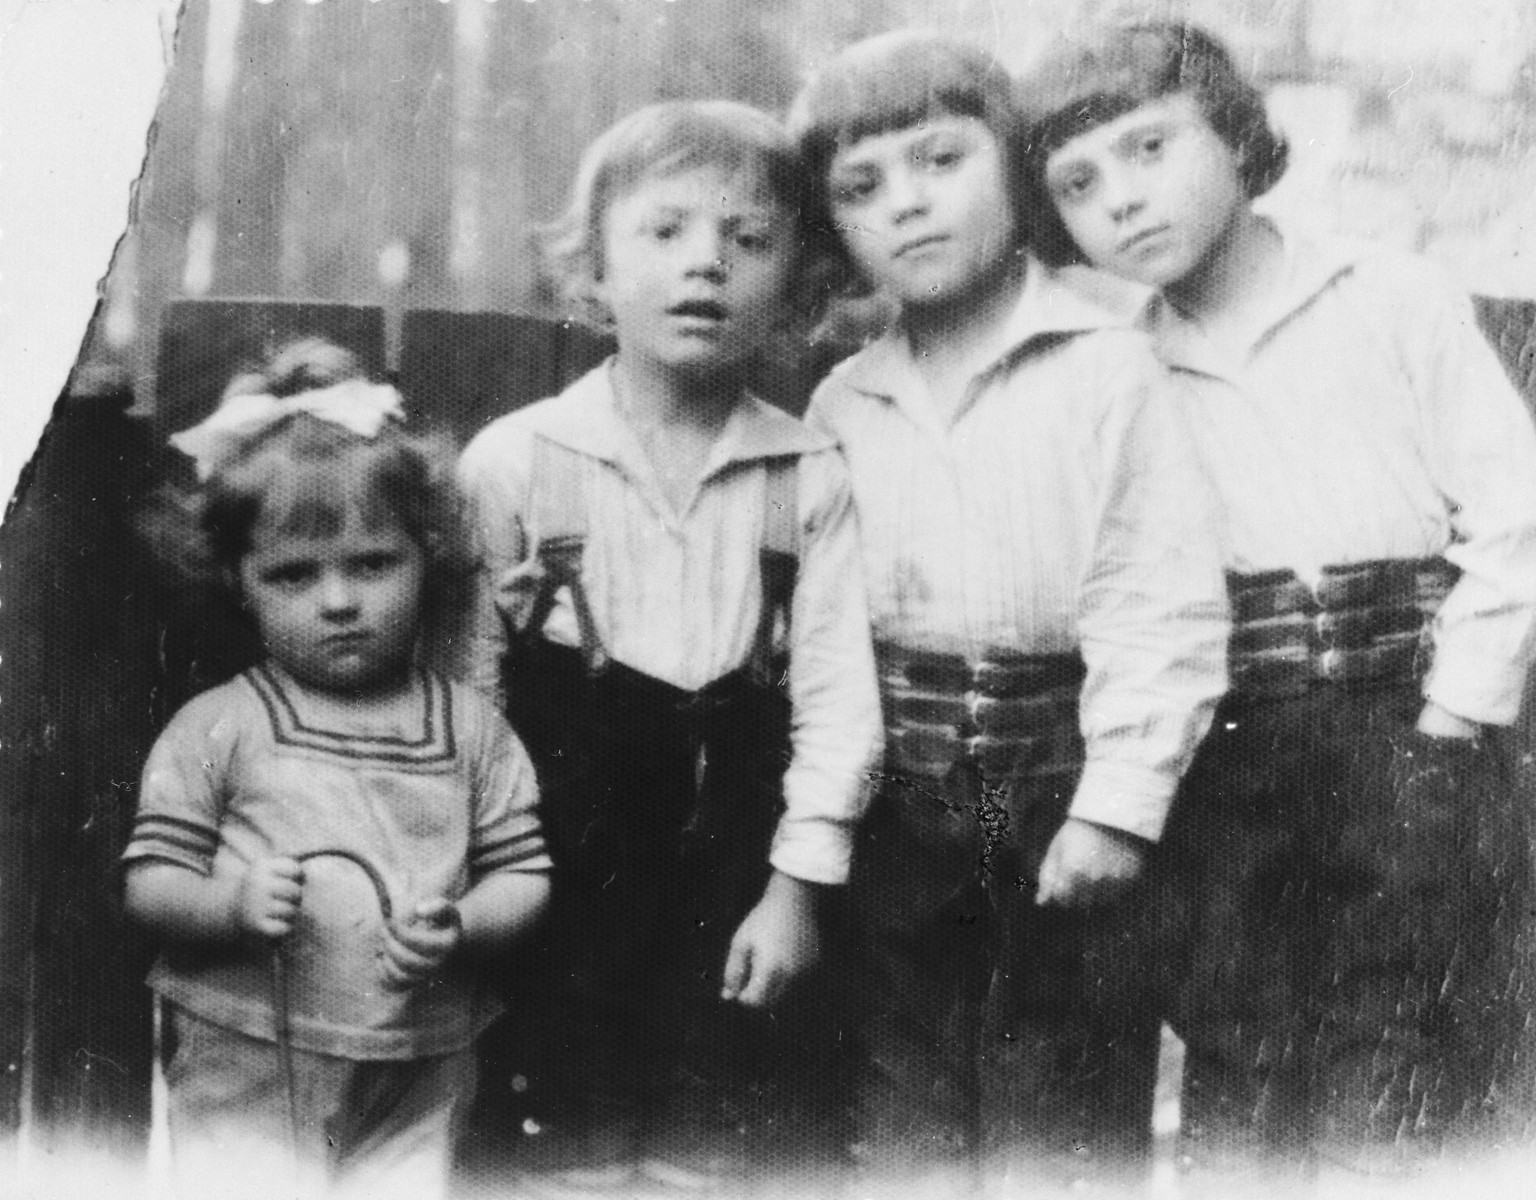 Portrait of four of the Kleinhandler children in Chmielnik, Poland.

Pictured from left to right are: Bluma, Moshe, Leibisz and Avram Kleinhandler.